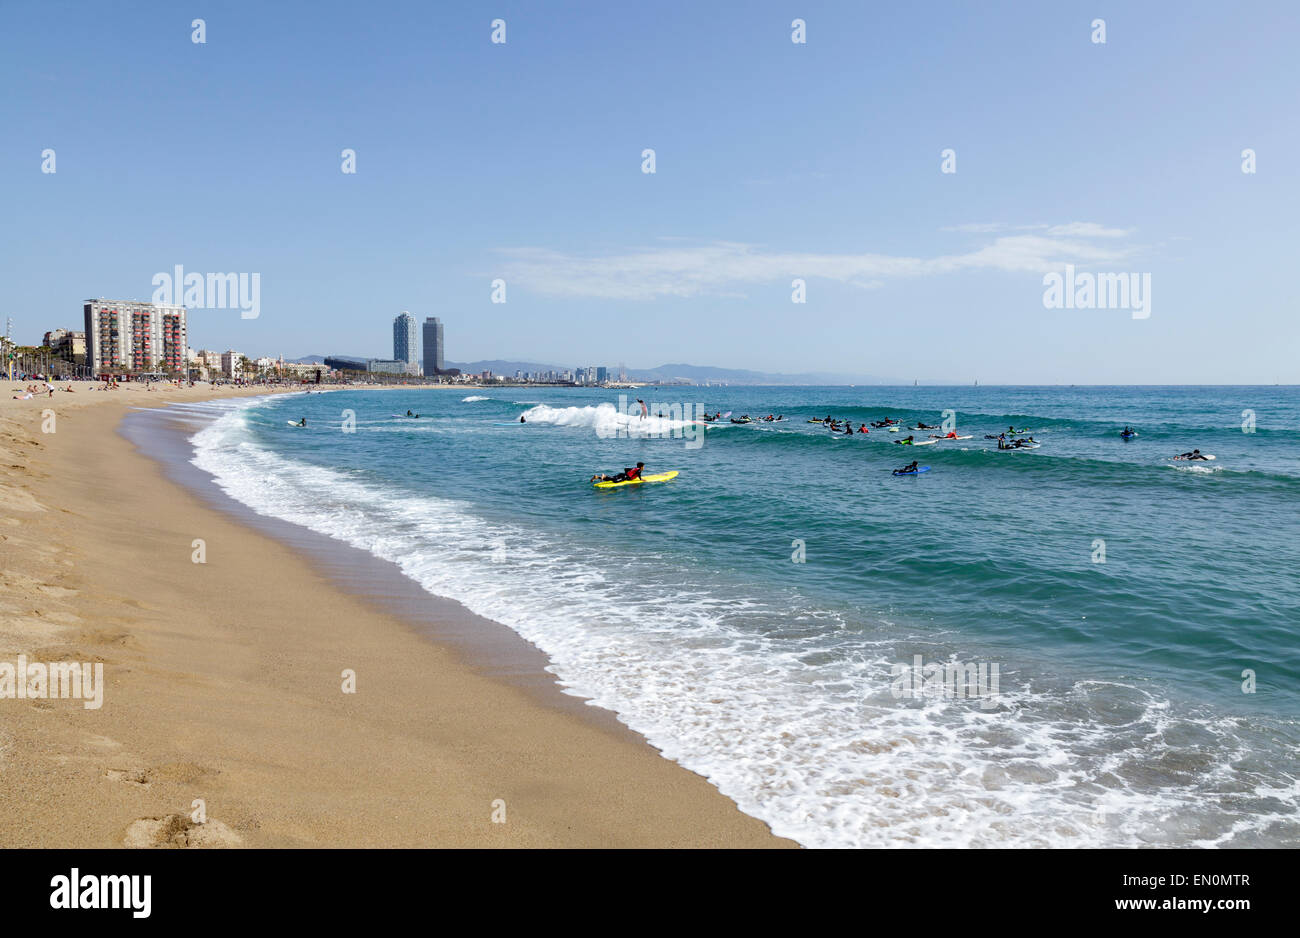 La plage de Barceloneta avec surfers, Barcelone, Catalogne, Espagne Banque D'Images